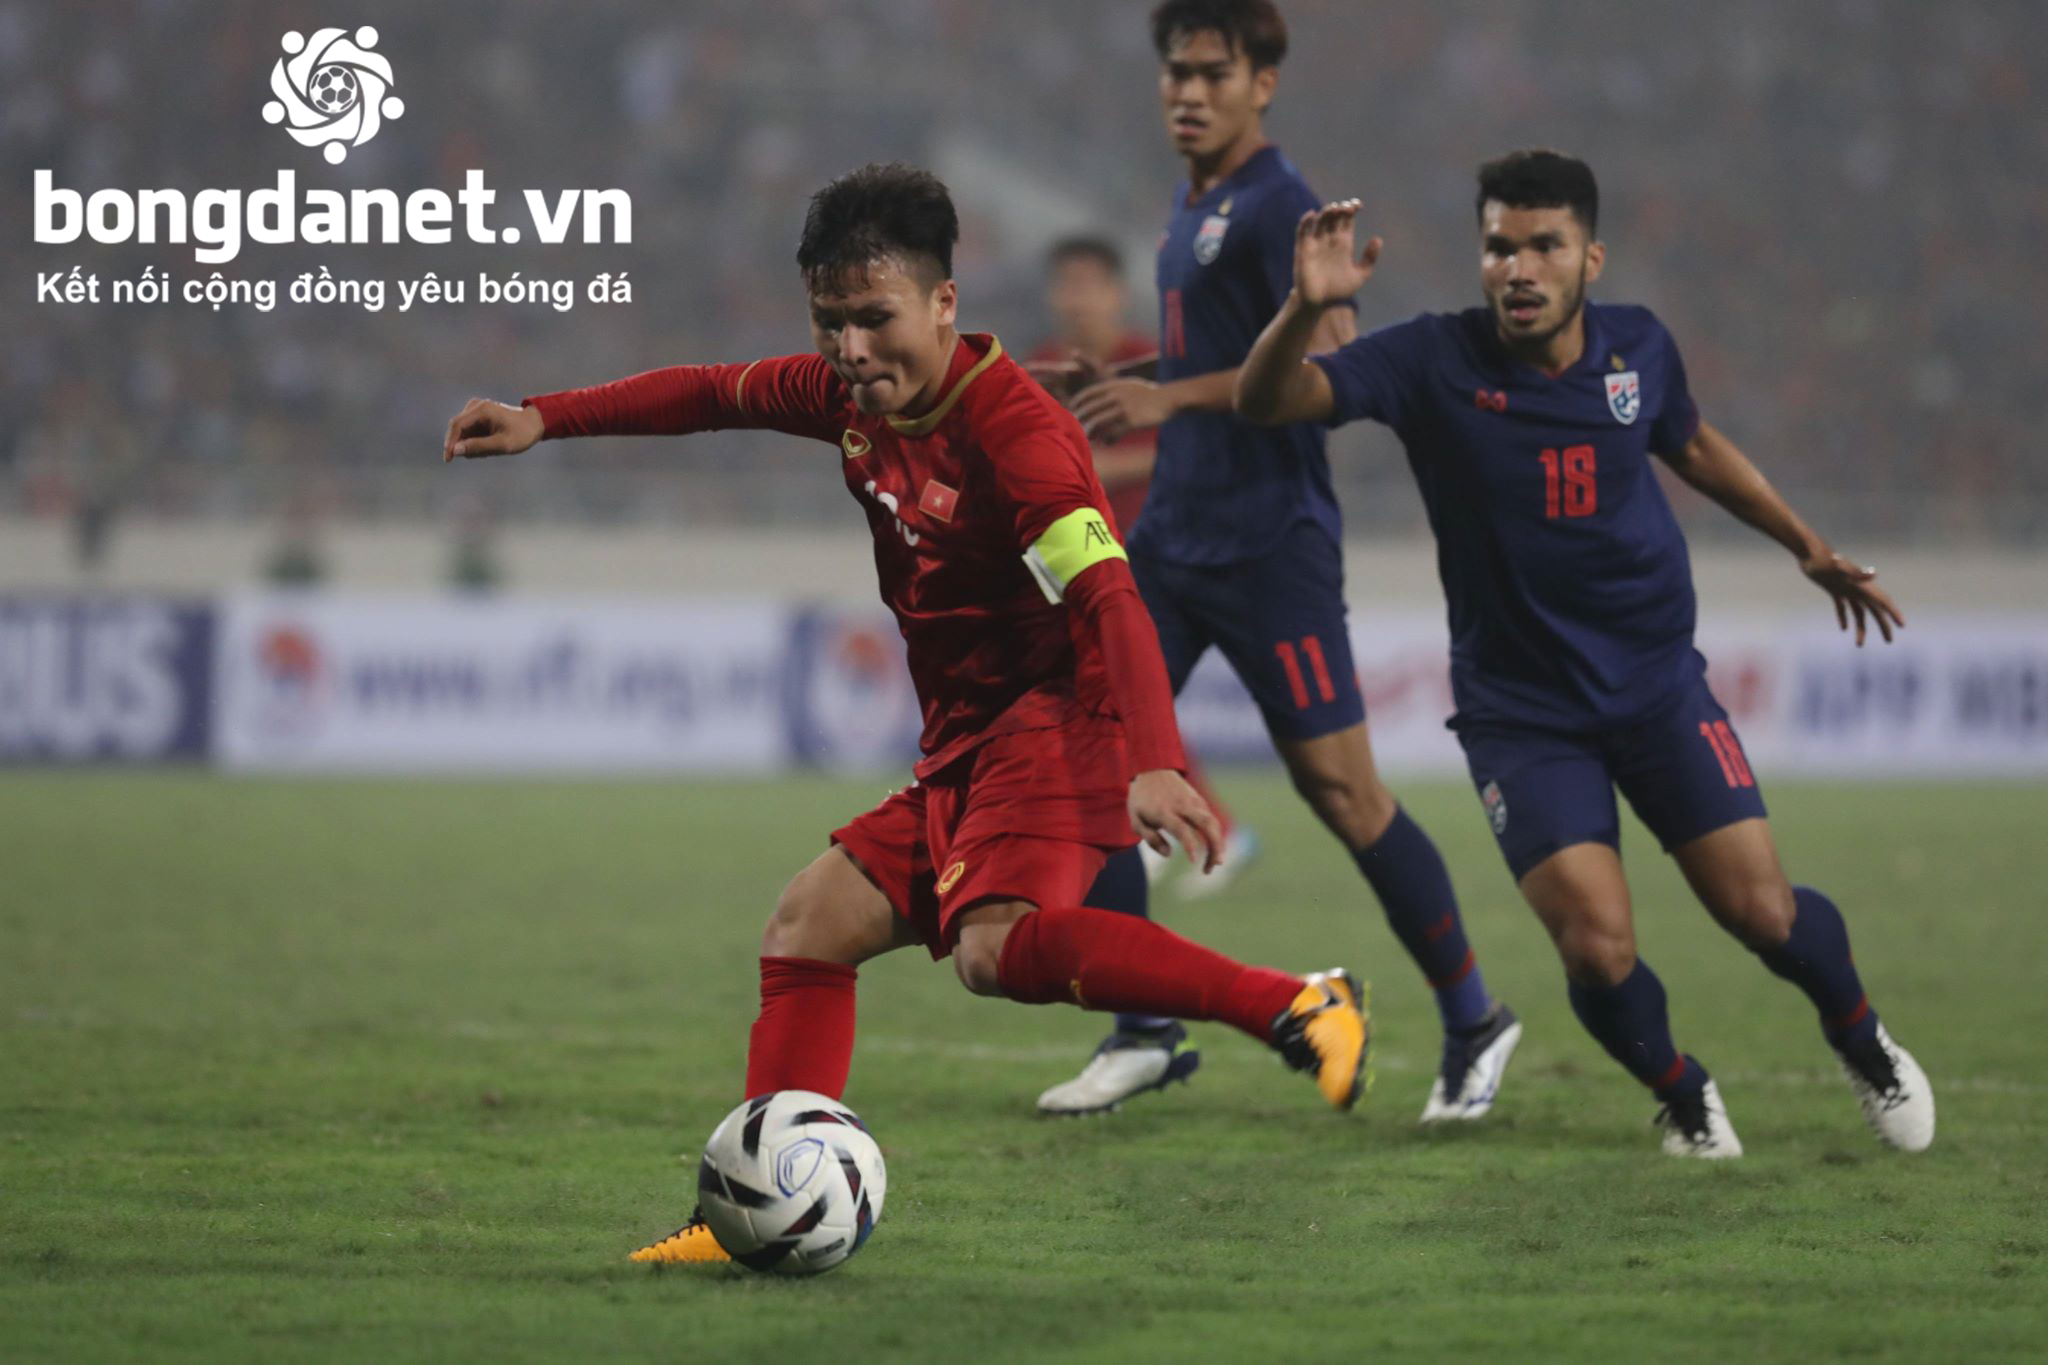 Lịch thi đấu vòng loại World Cup 2022 hôm nay 5/9: Thái Lan vs Việt Nam